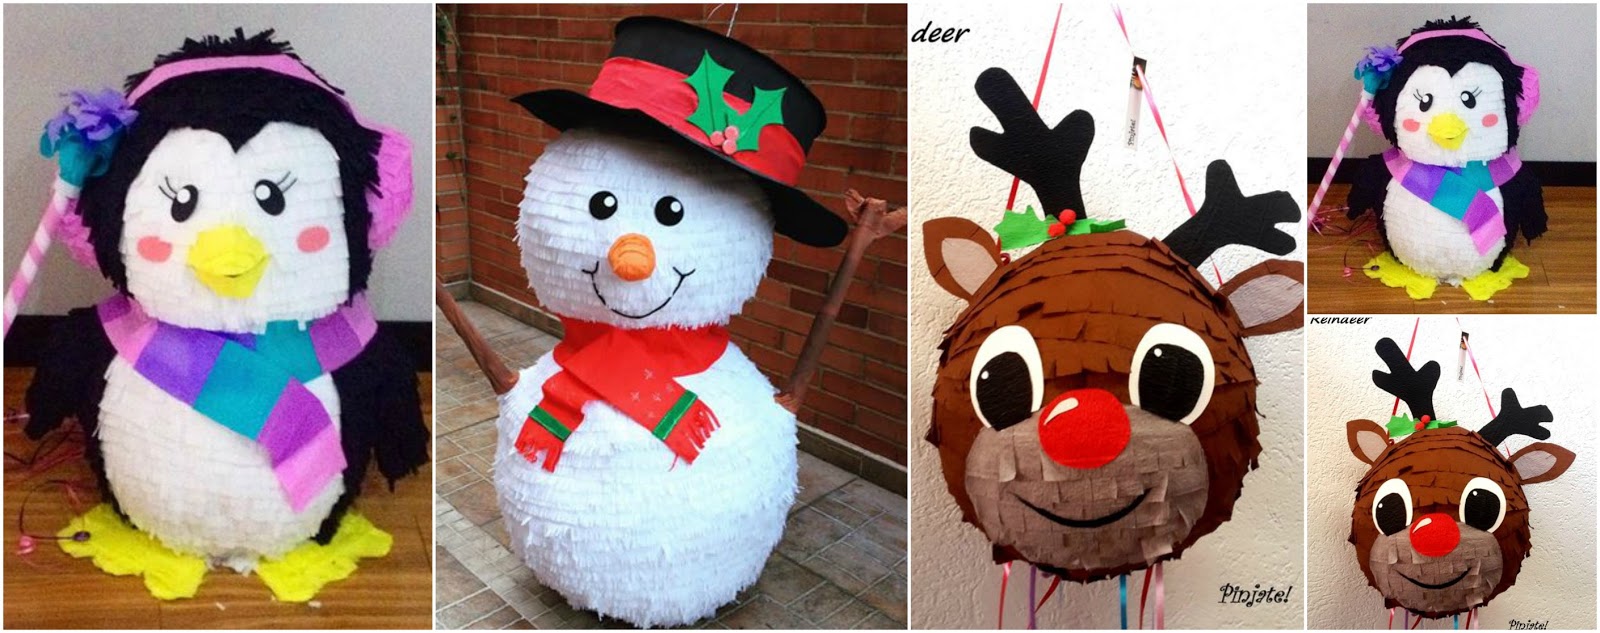 nieve vistazo Tomar un baño 4 Ideas hermosas para hacer piñatas navideñas paso a paso ~ Manoslindas.com